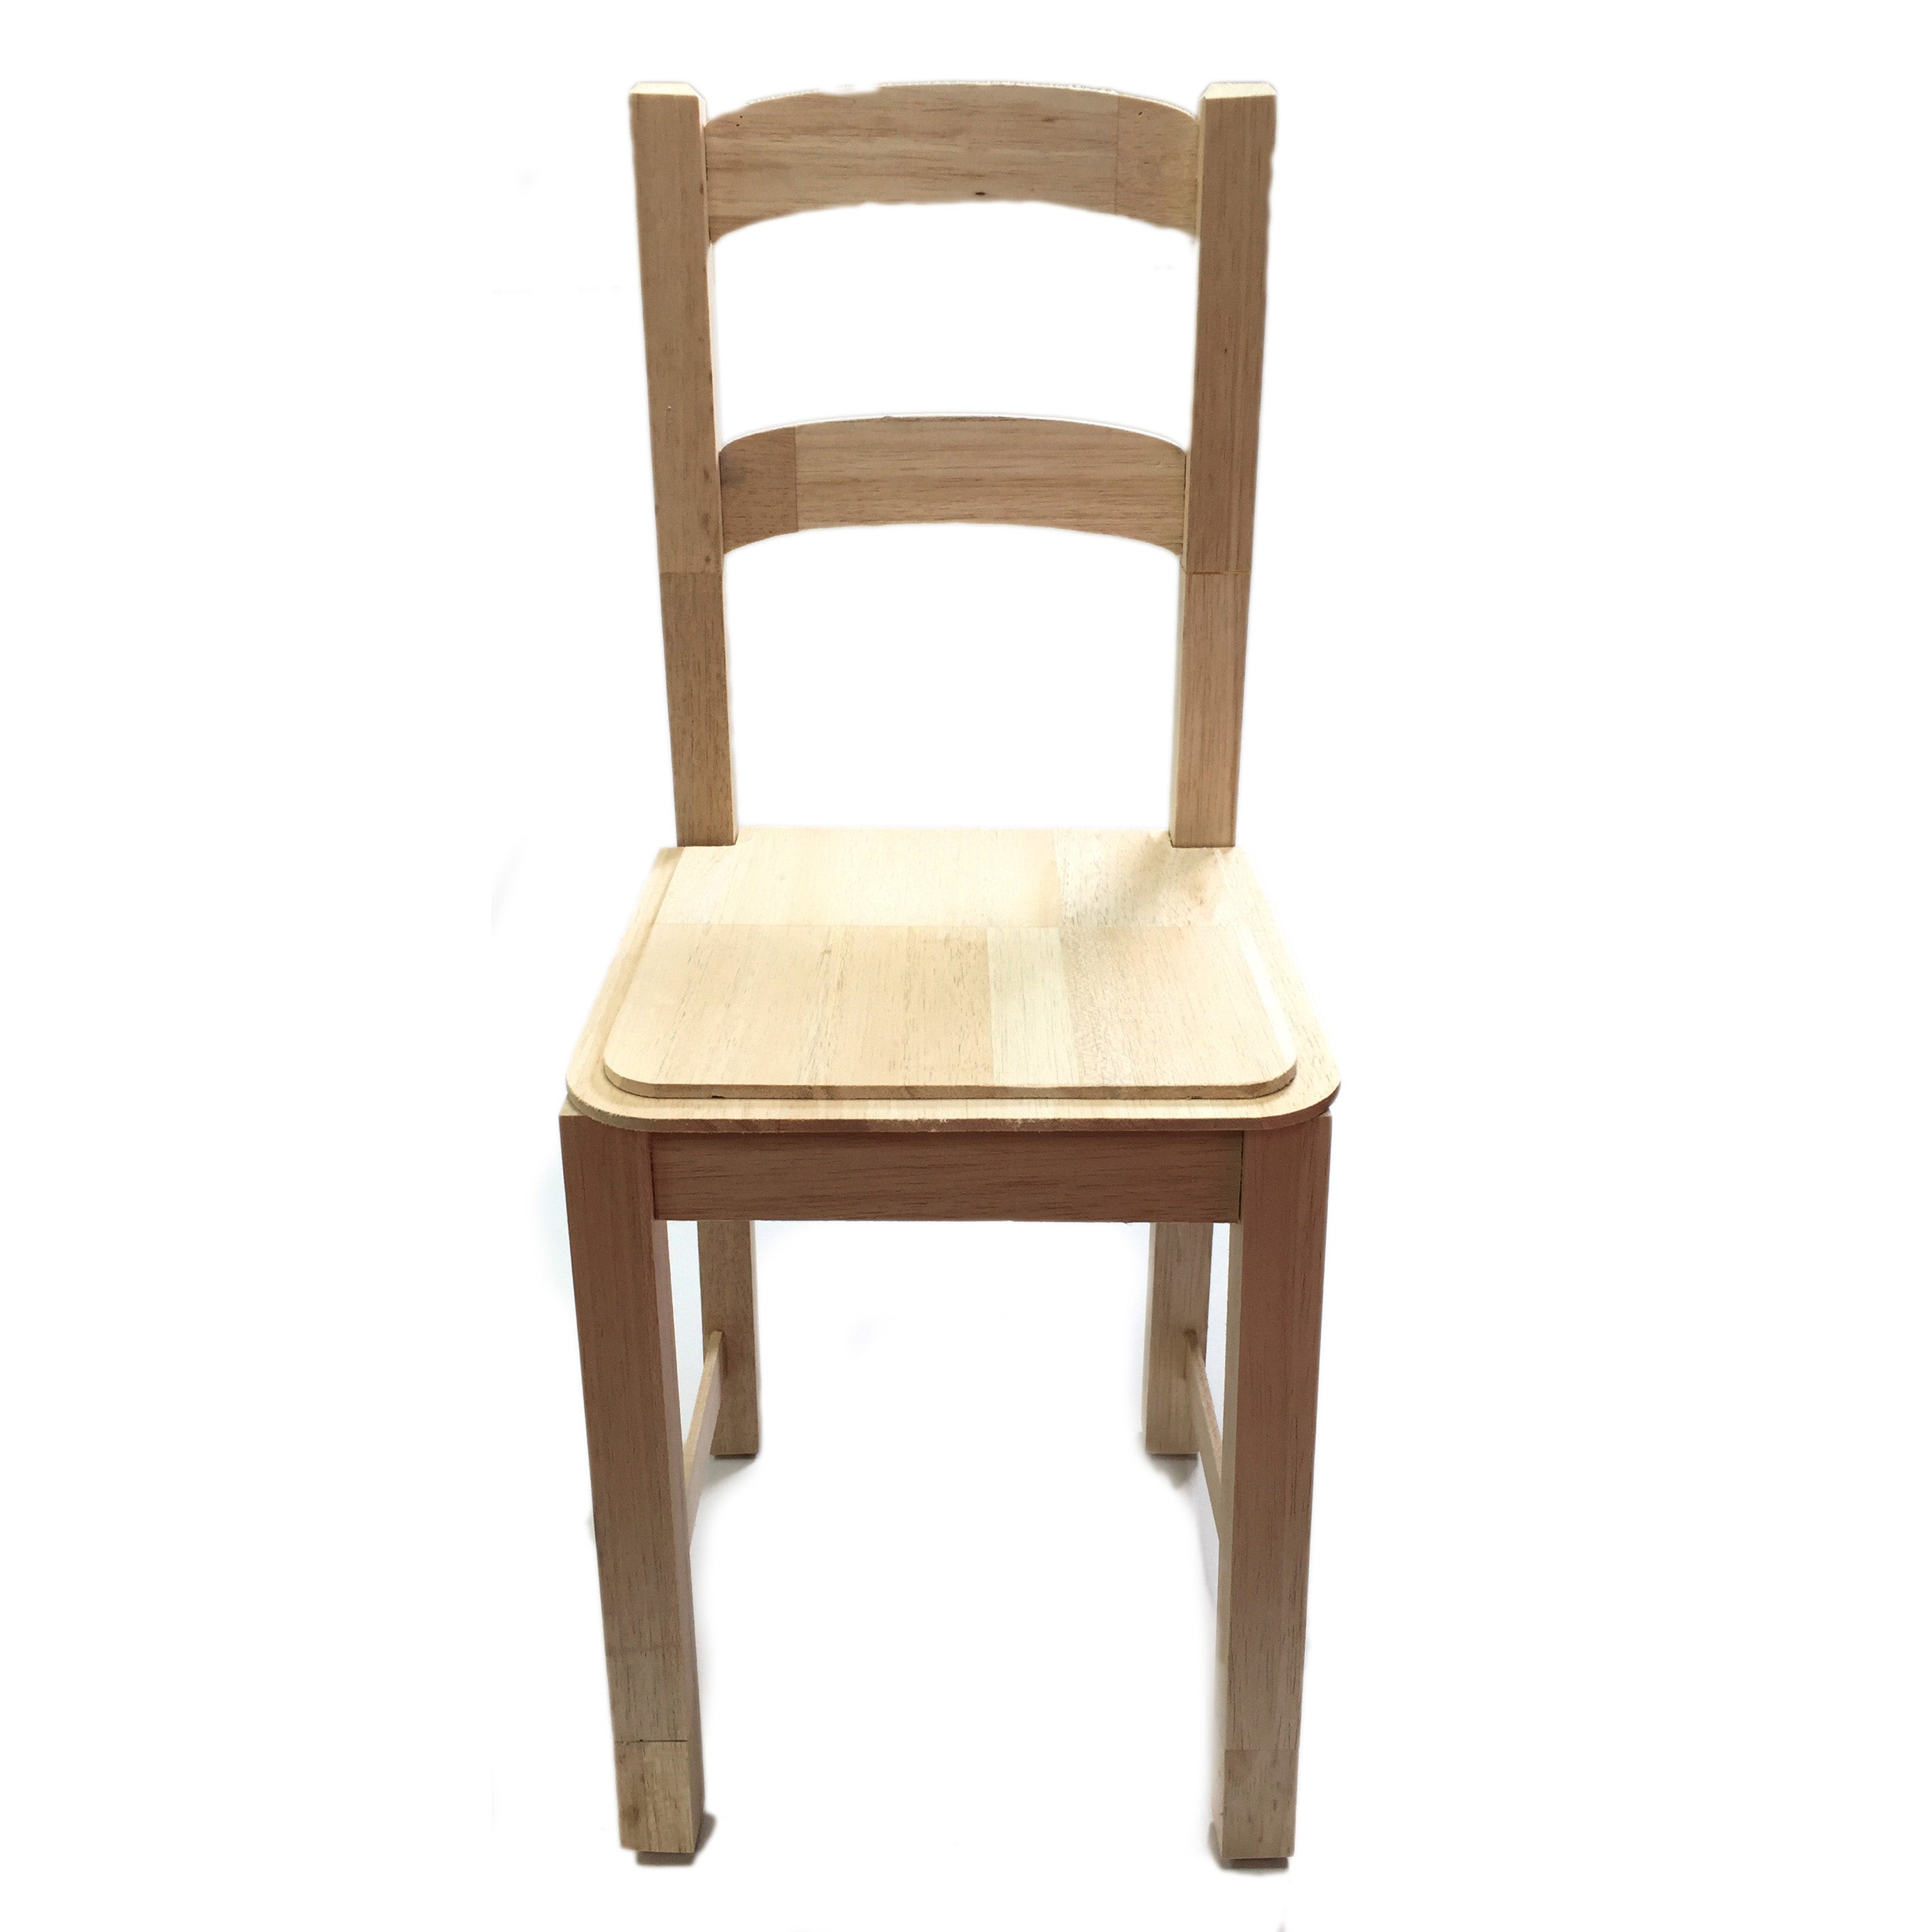 SMASHProps Breakaway Balsa Wood Chair Smashable Stunt Prop - NATURAL - Natural